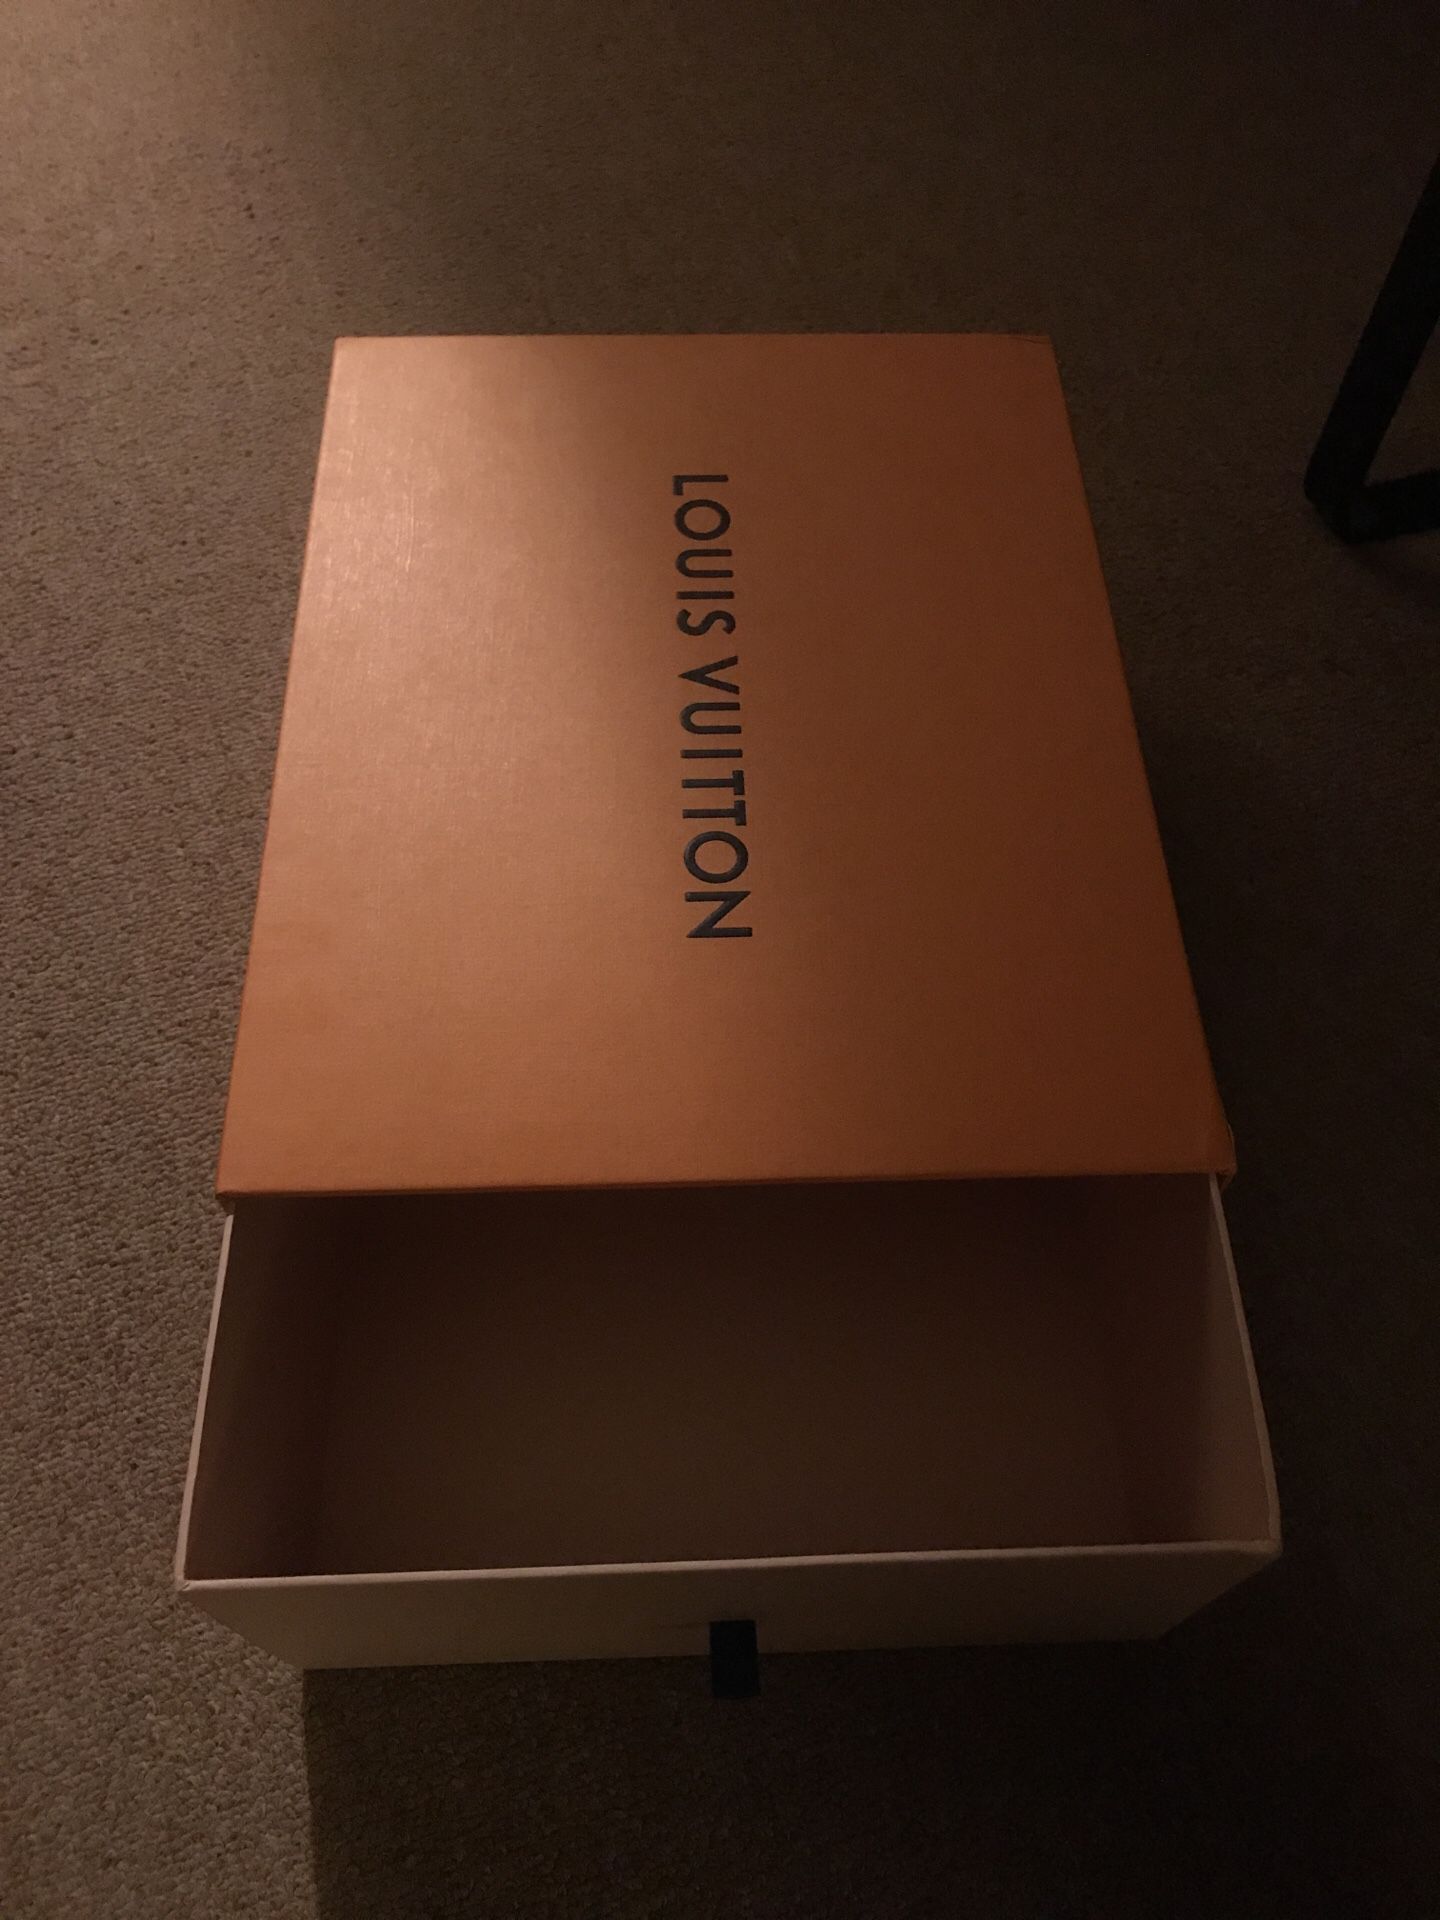 Empty LV Louis Vuitton Shoe Box for Sale in Palos Verdes Estates